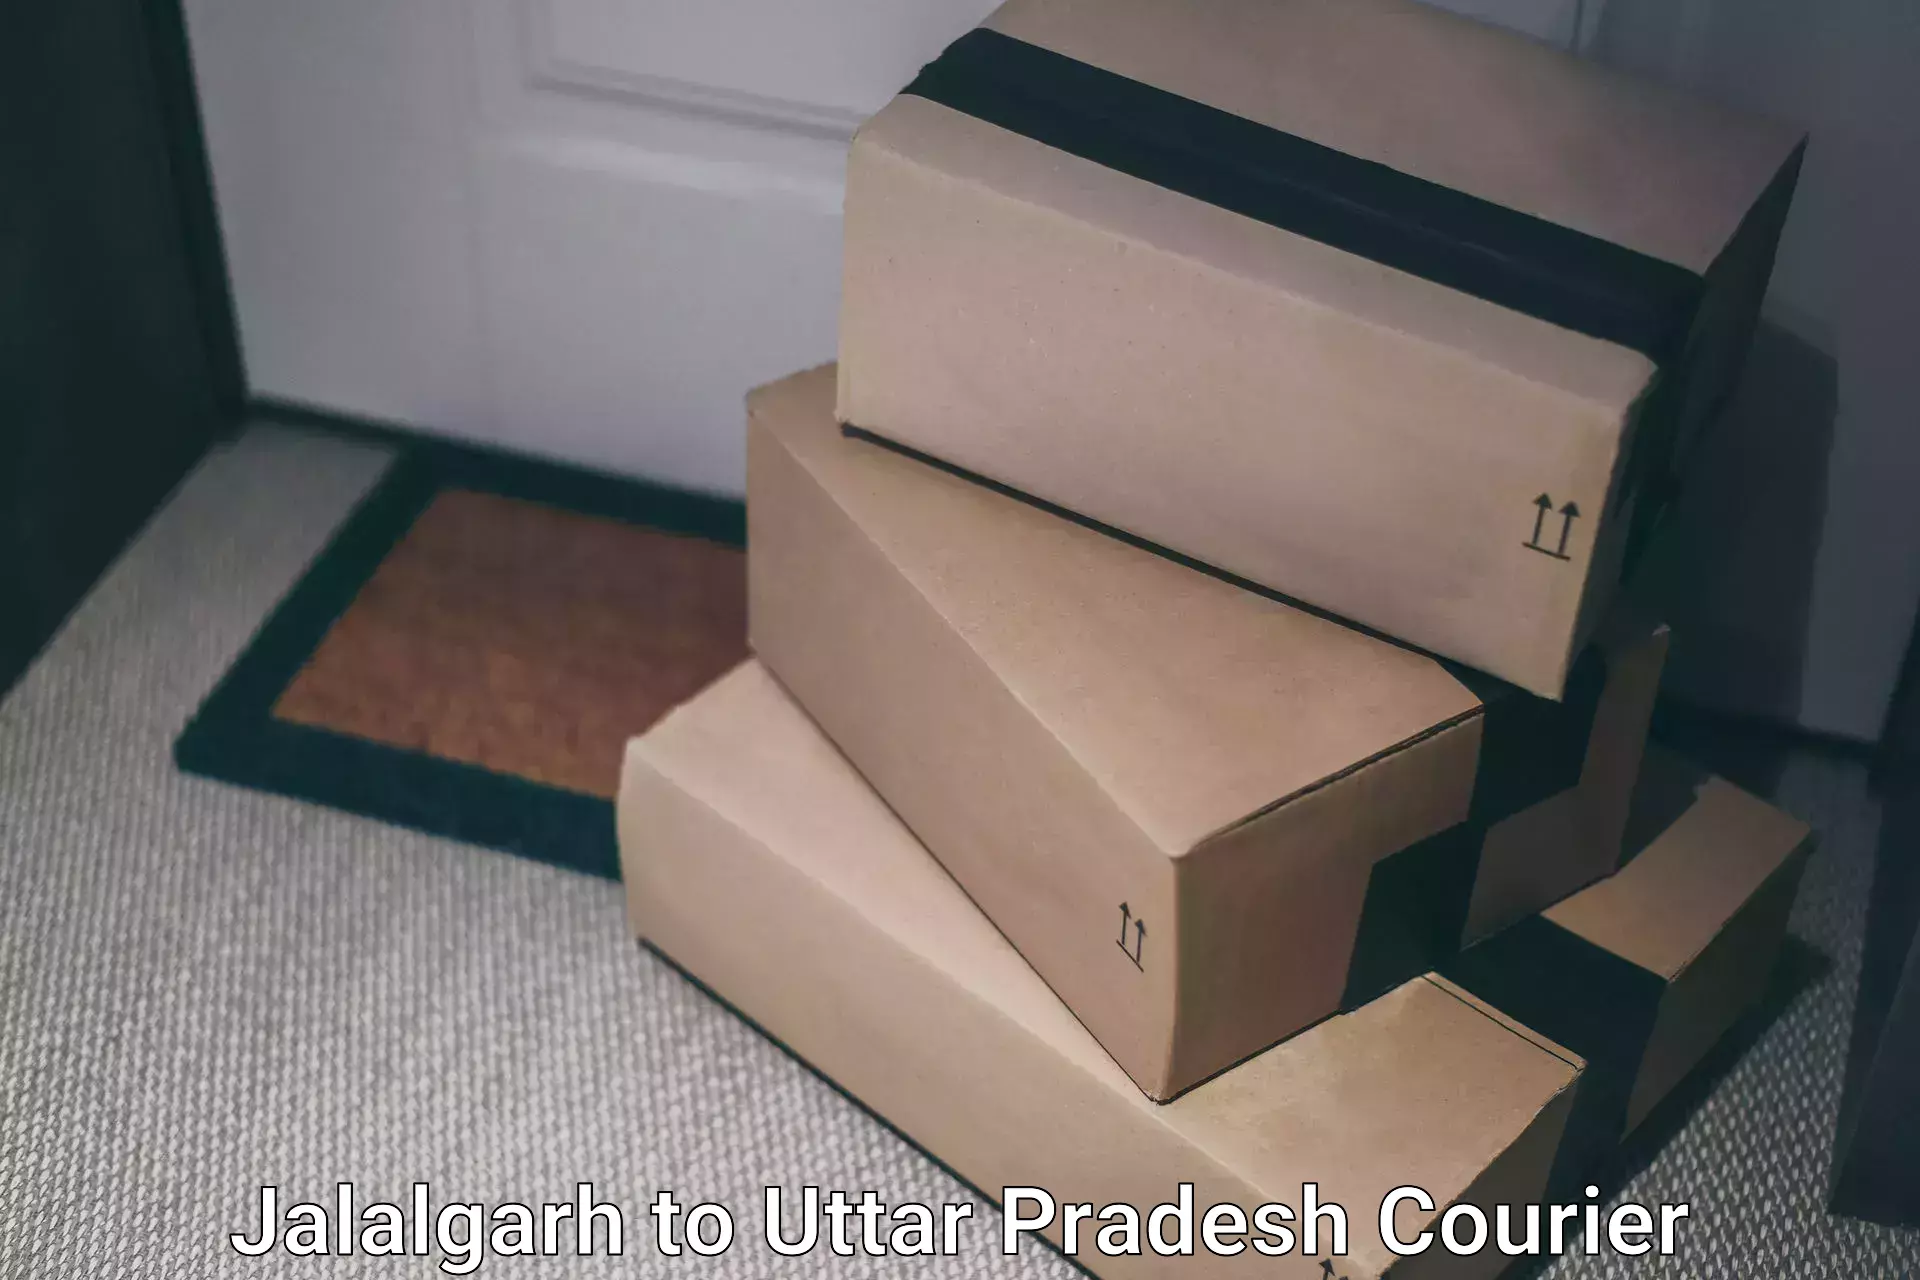 Premium courier services in Jalalgarh to Itava